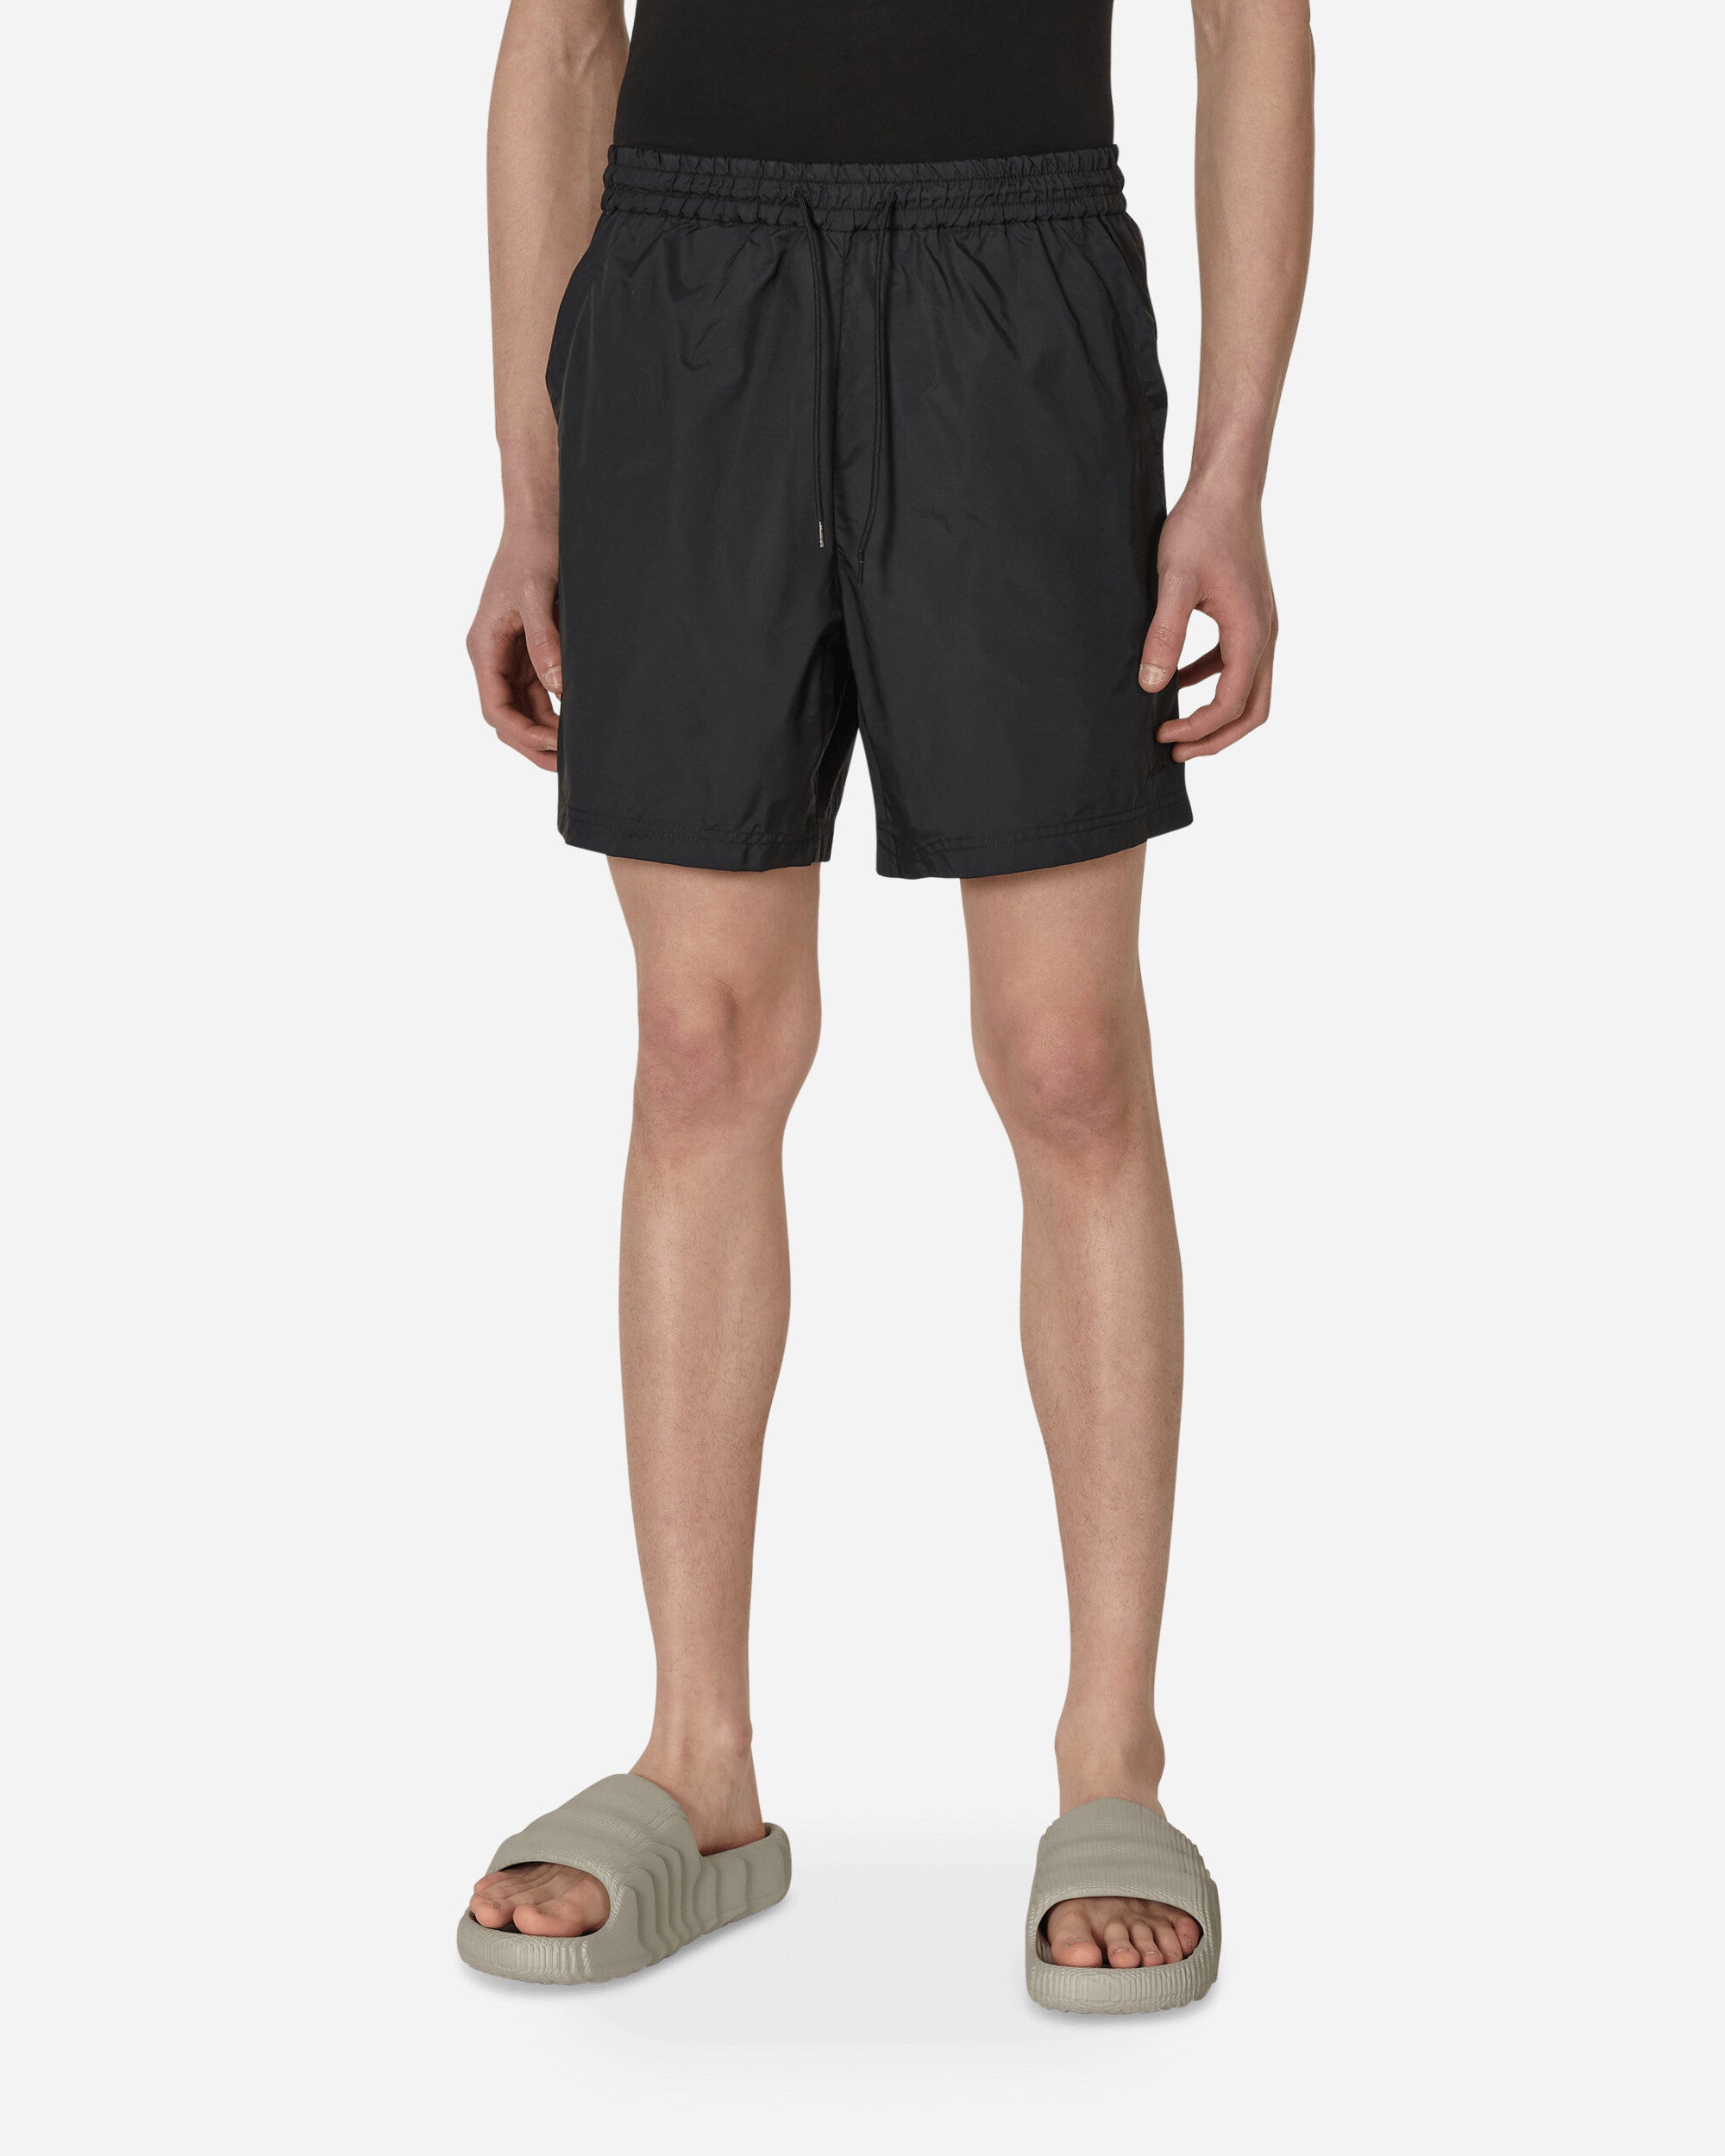 A.P.C. Bobby Swimwear Short Black Shorts Short PSAHS-H10182 LZZ